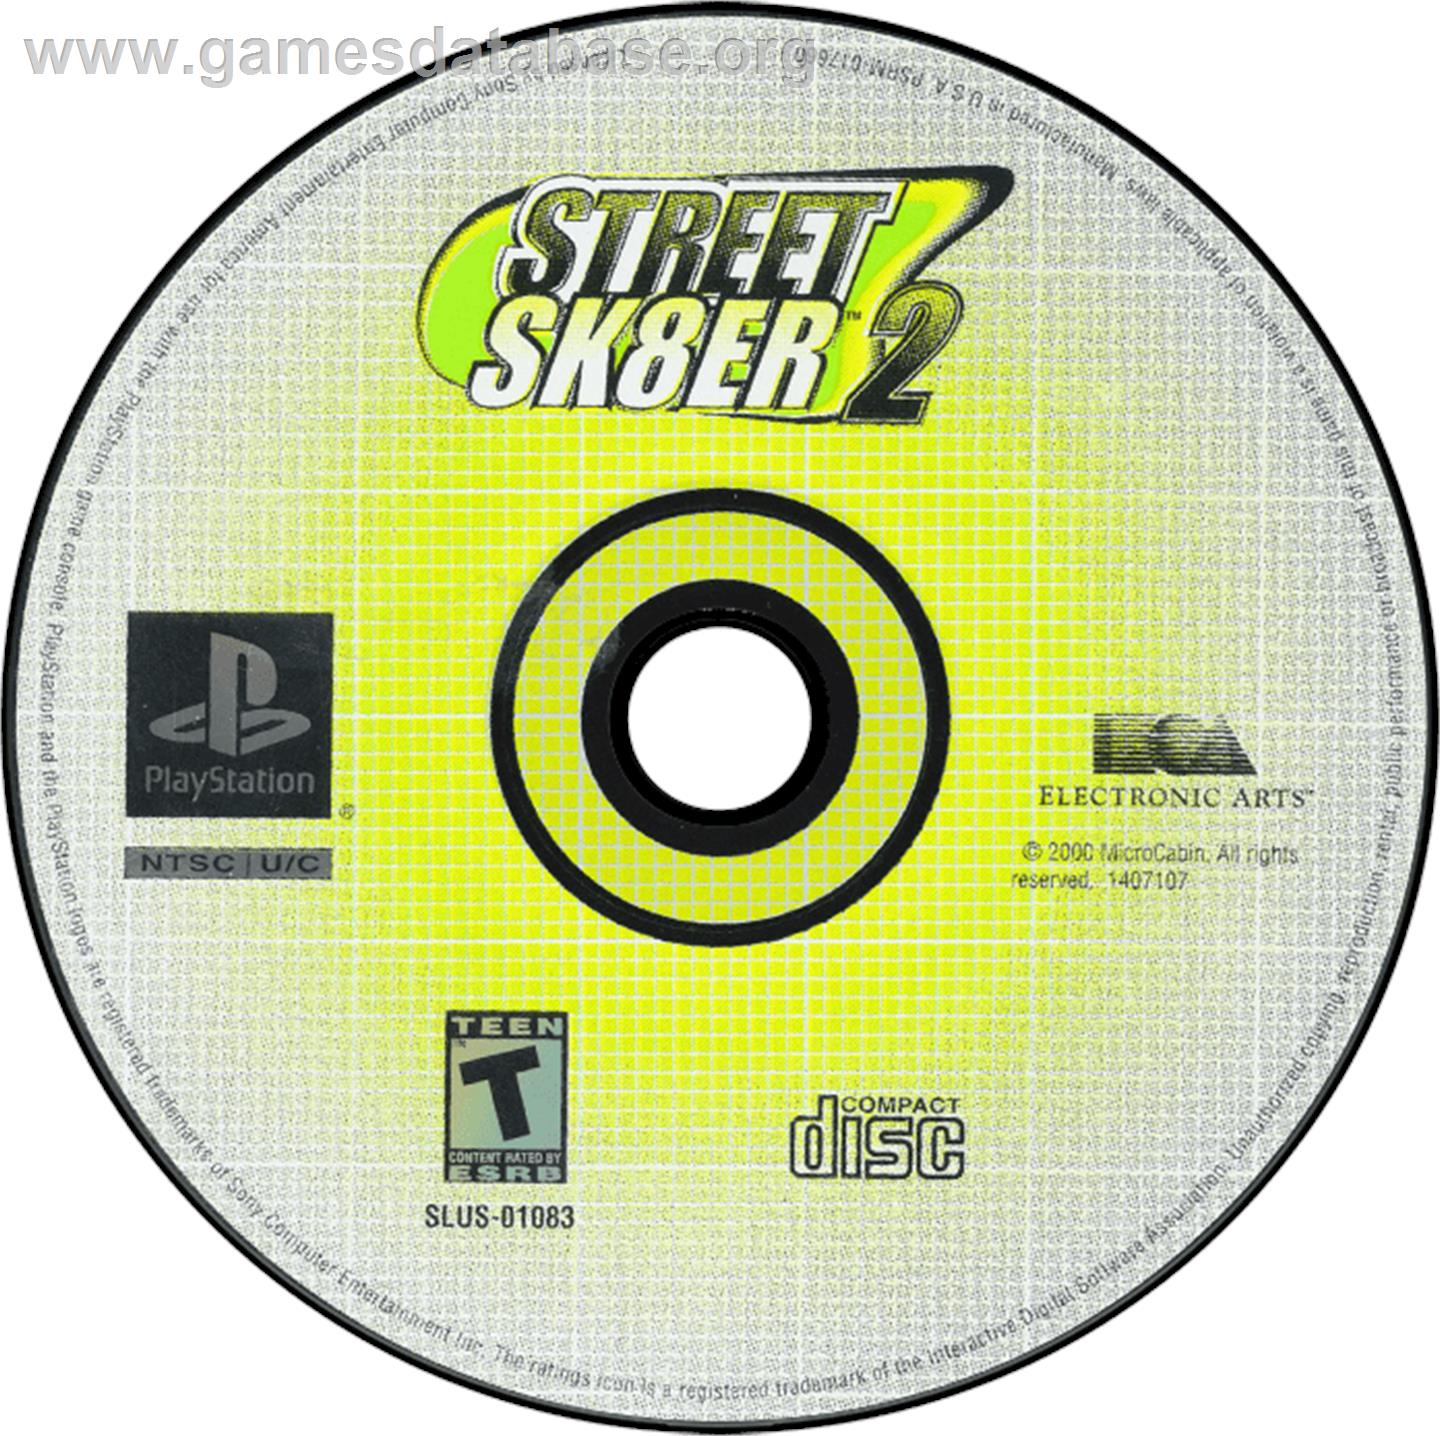 Street Sk8er 2 - Sony Playstation - Artwork - Disc